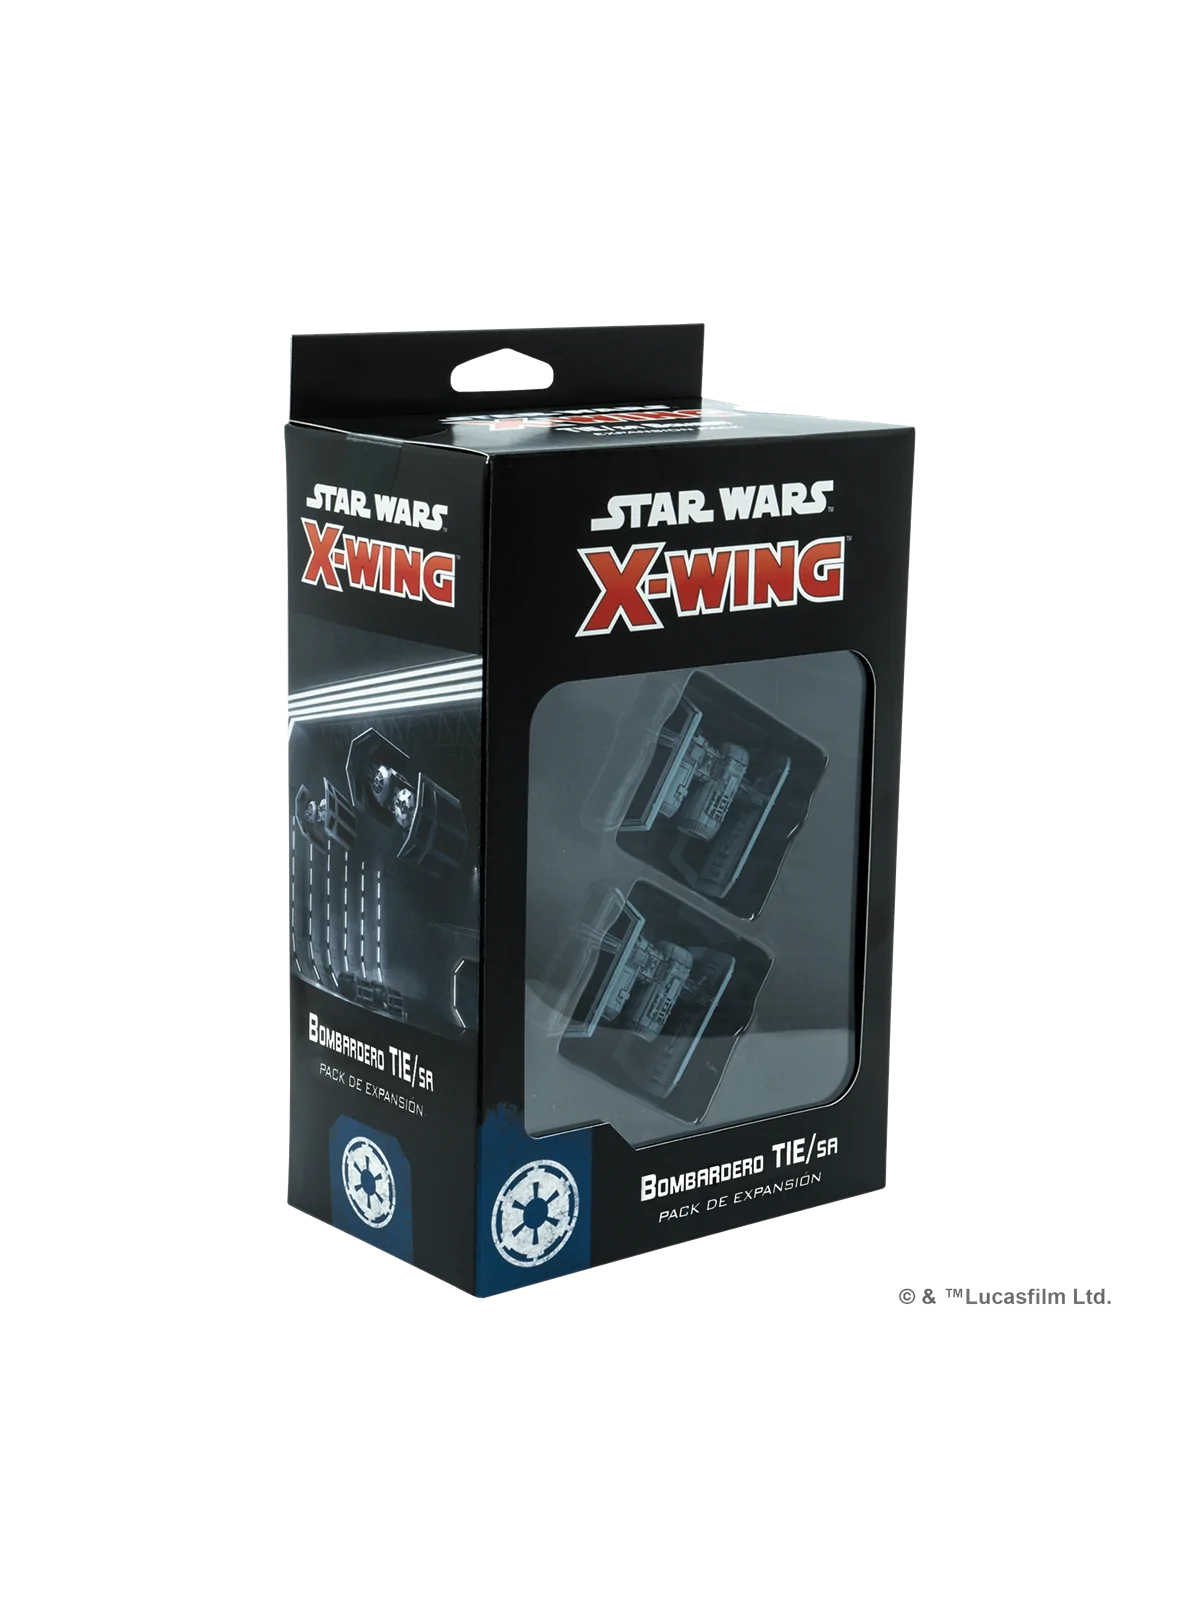 Comprar Star Wars X-Wing: Bombardero TIE/sa barato al mejor precio 40,